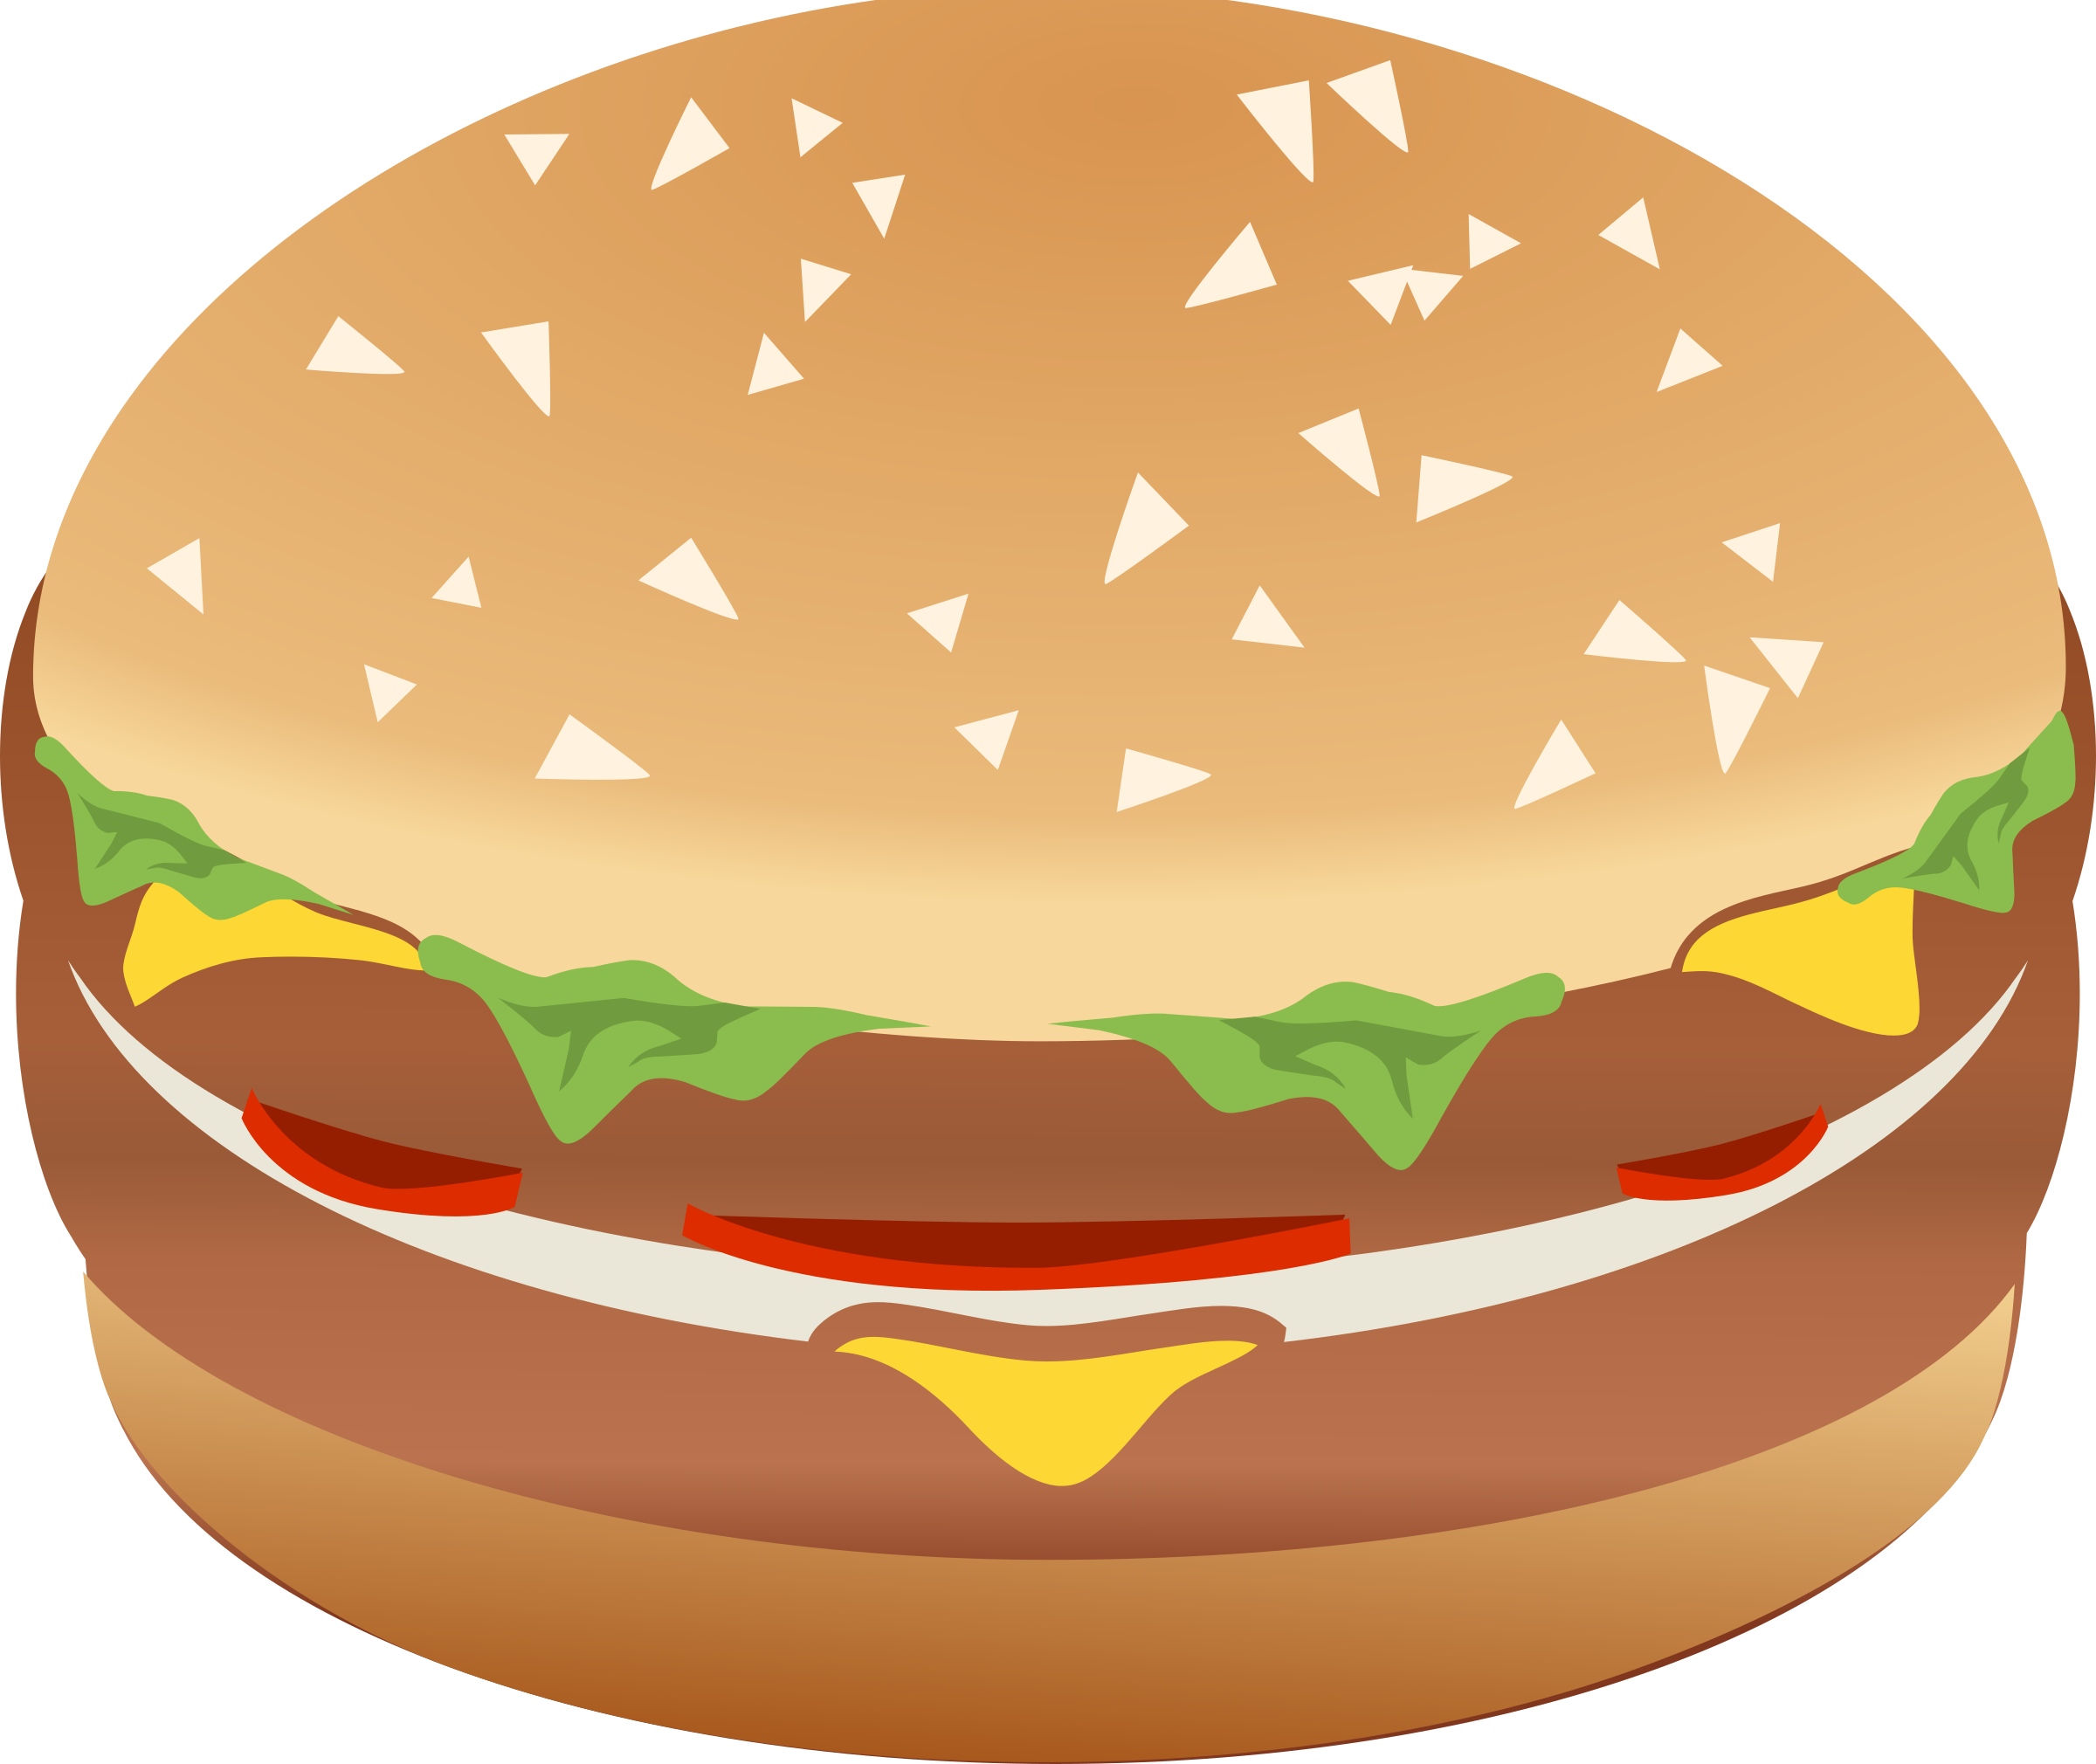 Clipart food hamburger. Burger remix with colors